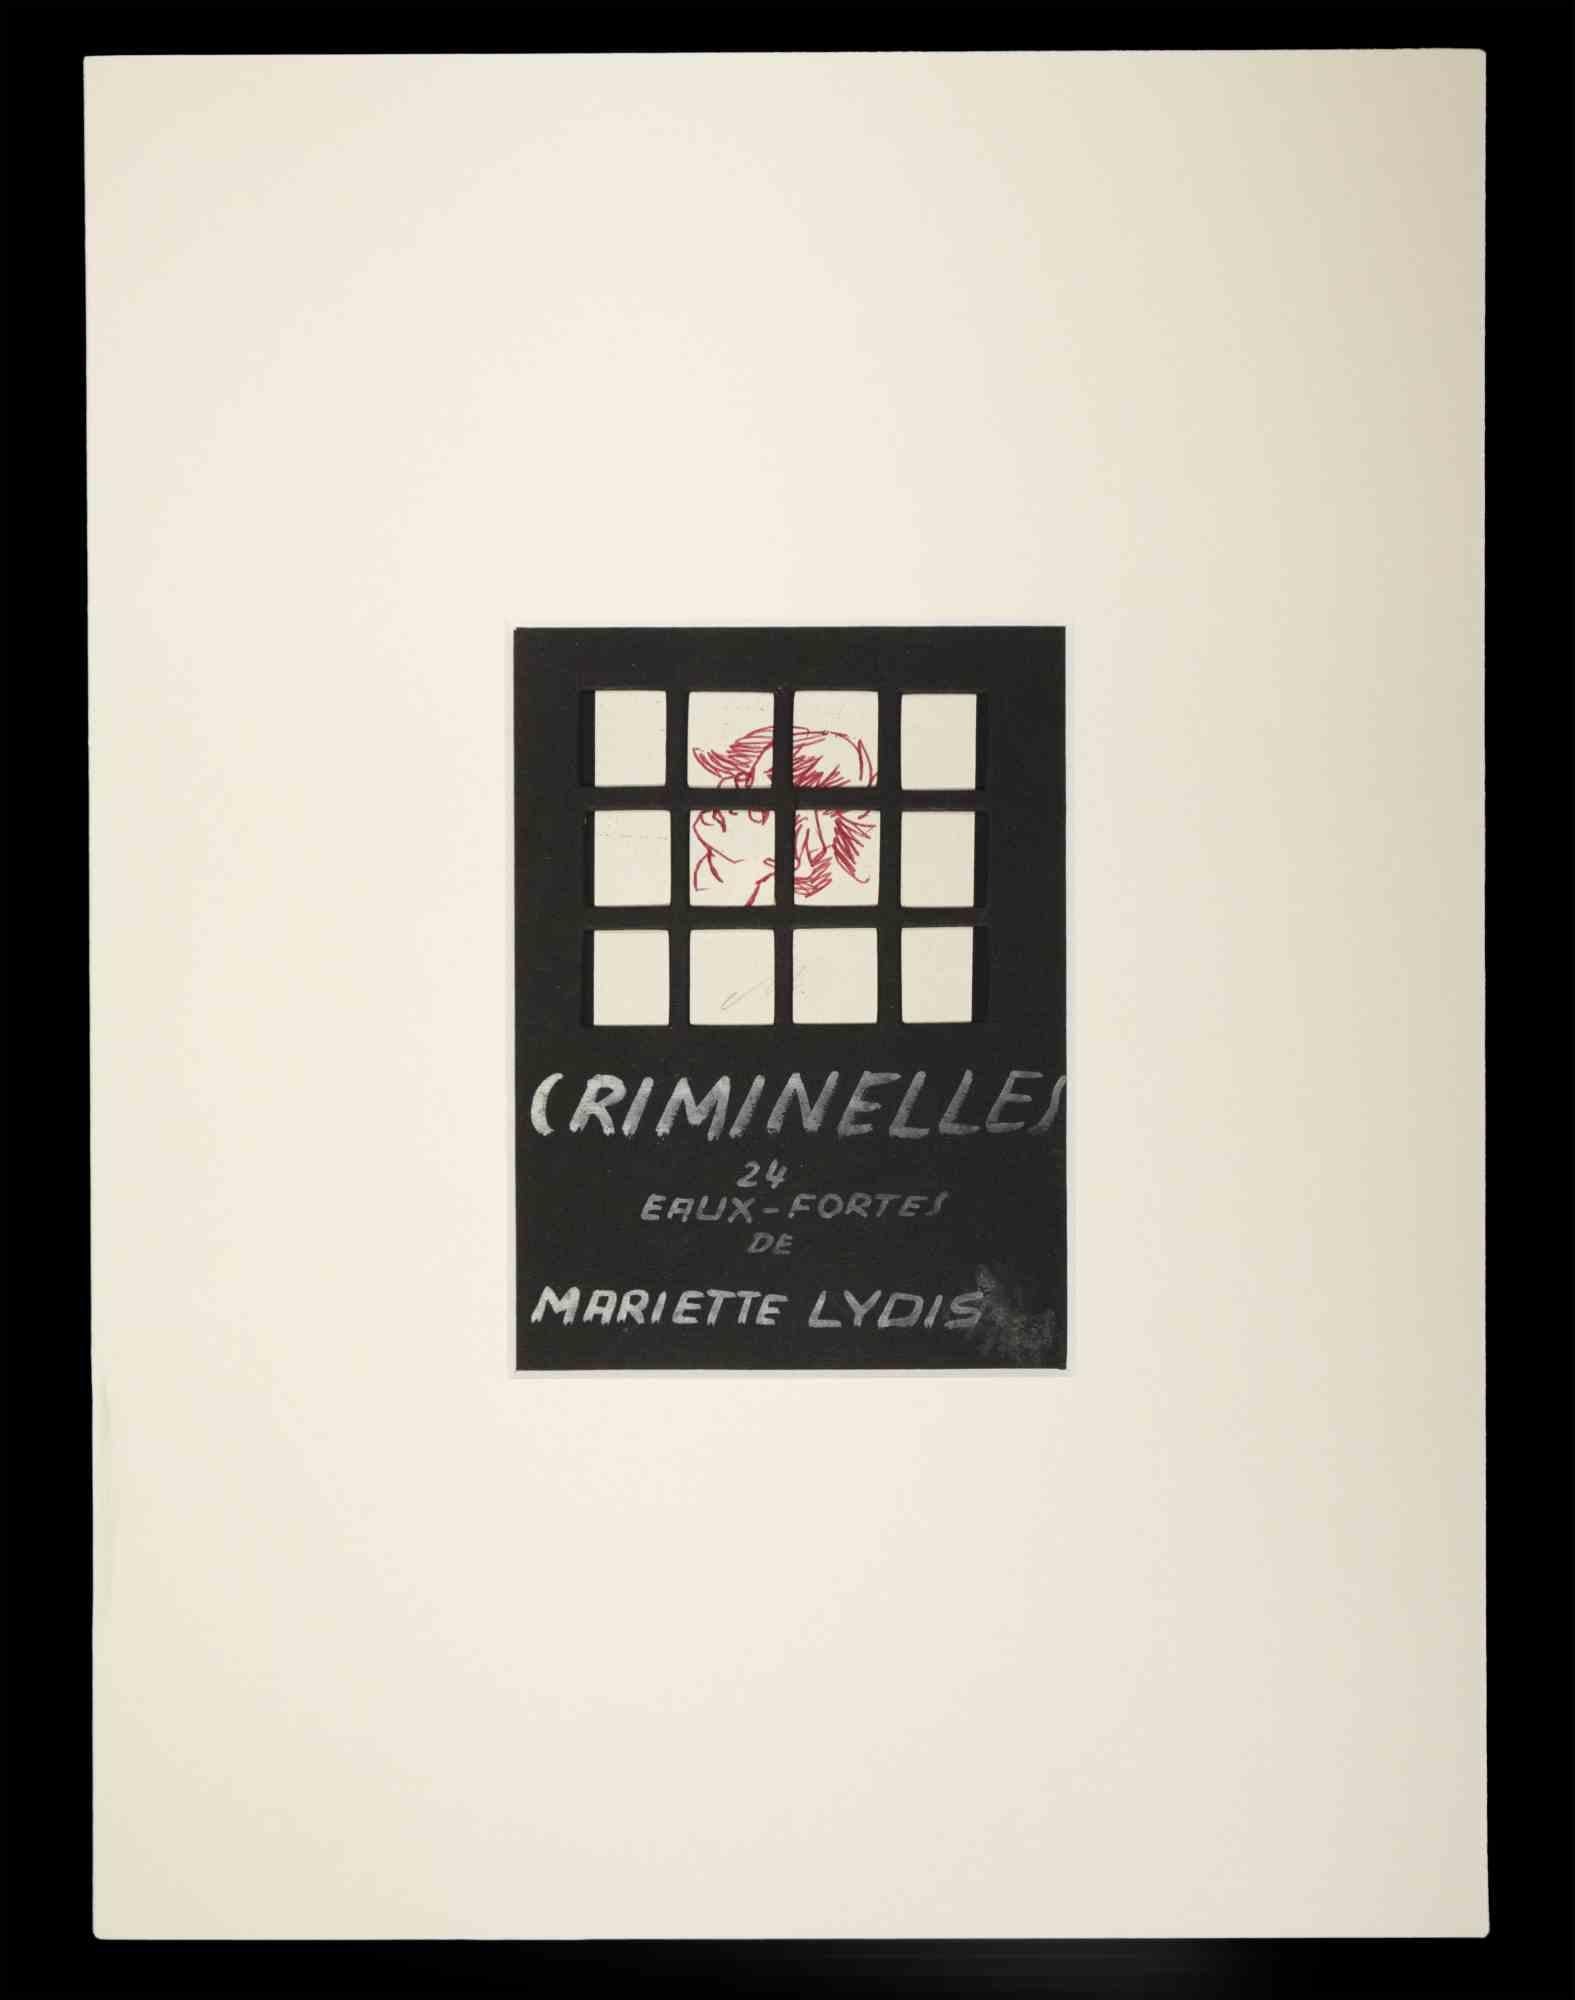 Das Titelbild von "Criminelles" ist ein Original-Kunstwerk in Mischtechnik von Mariette Lydis aus dem Jahr 1927.

Gute Bedingungen.

Das Kunstwerk wird mit weichen Strichen in einer ausgewogenen Komposition dargestellt.

 